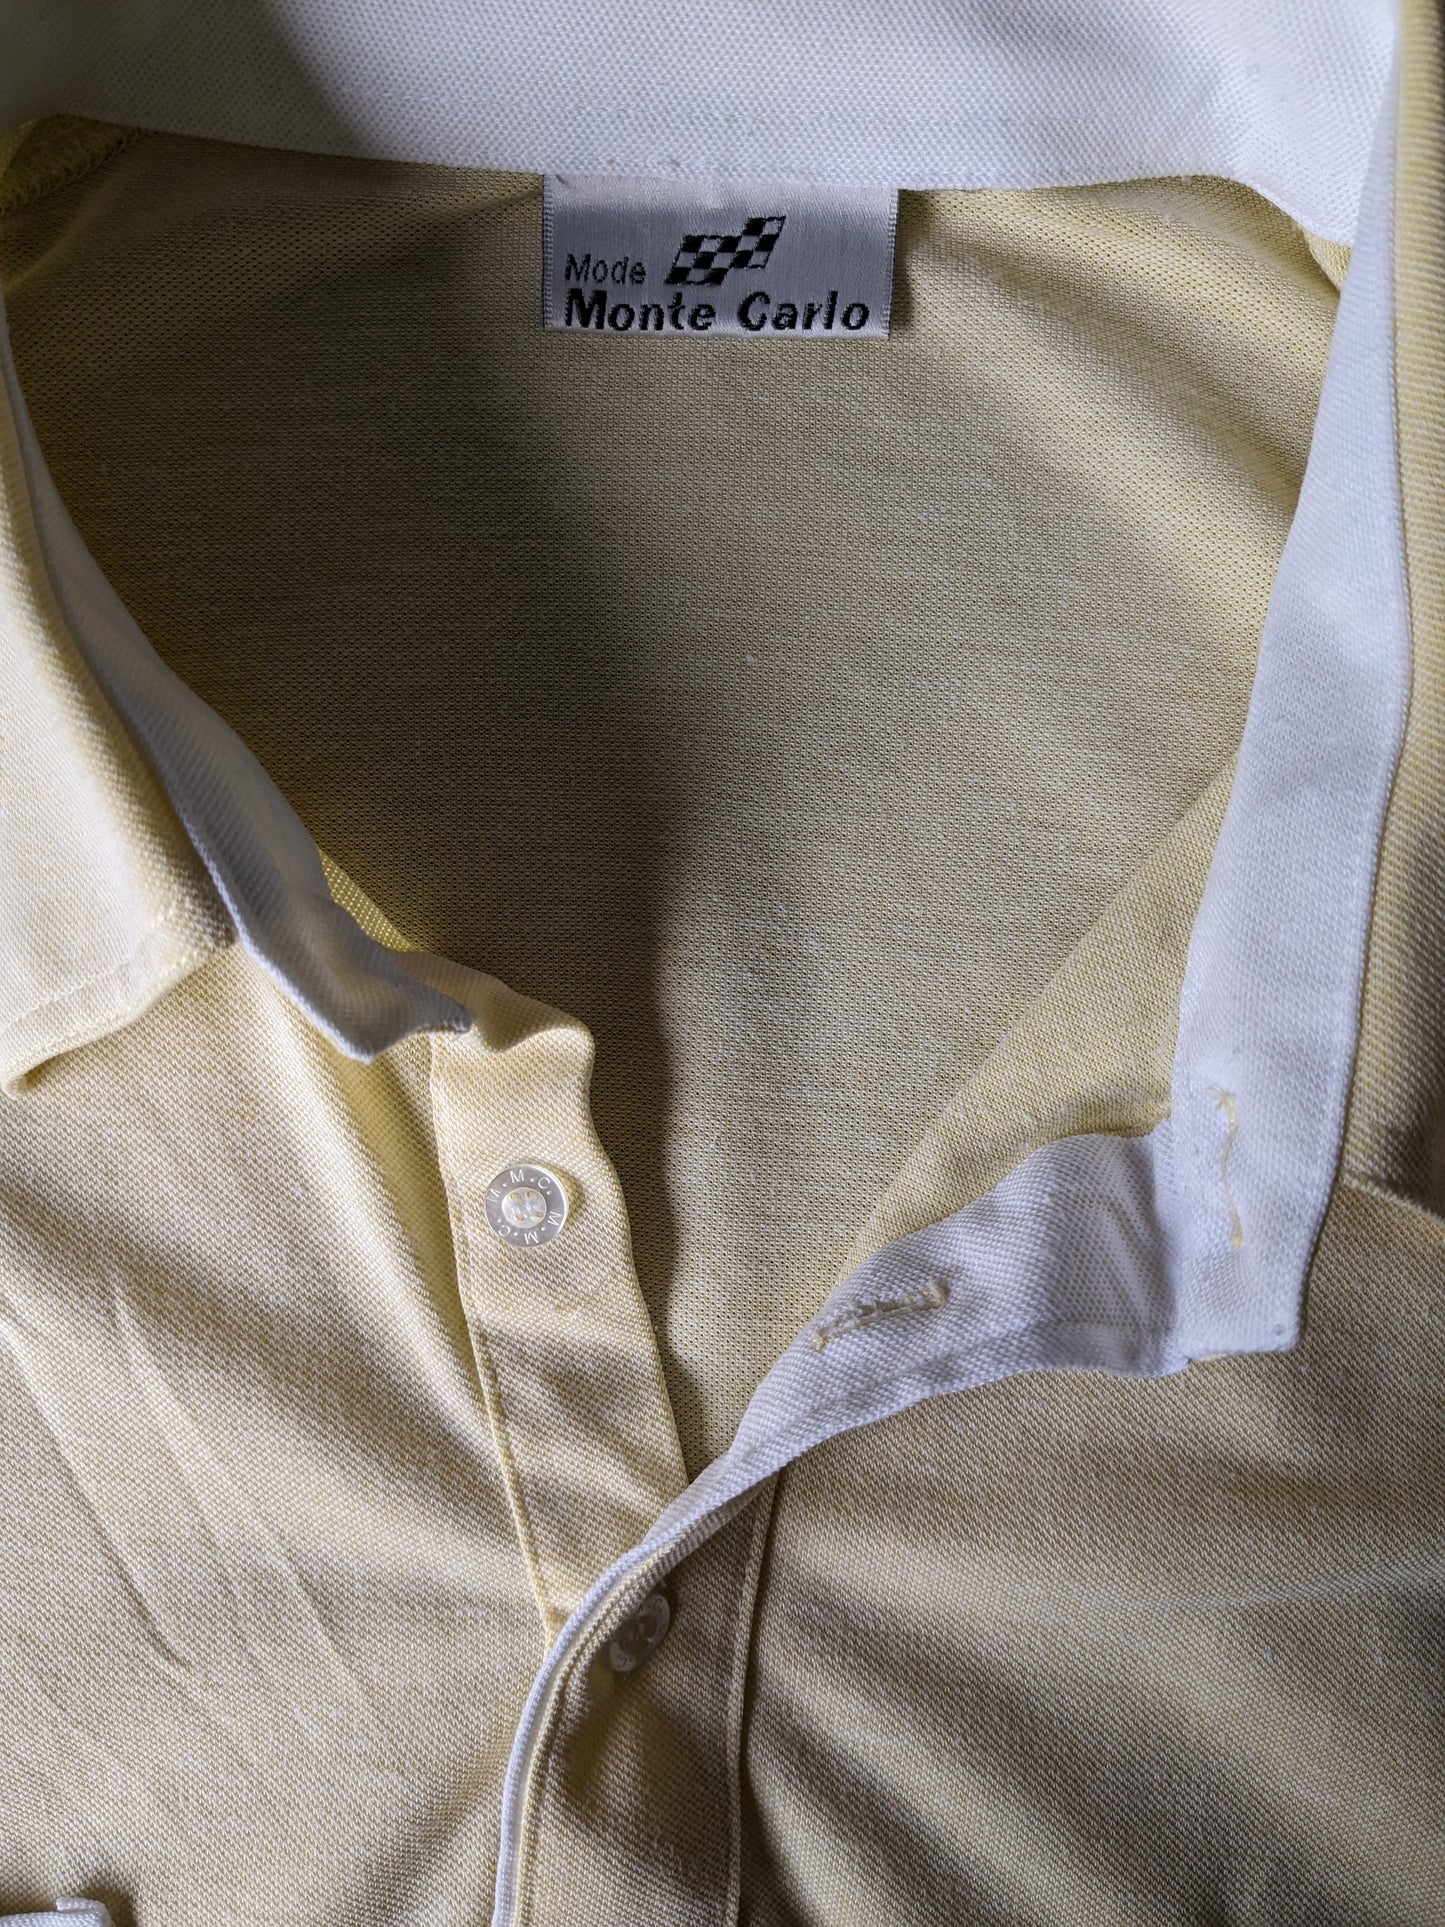 Polone vintage Monte Carlo con fascia elastica. Colore giallo chiaro. Dimensione 4xxl / xxxxl.